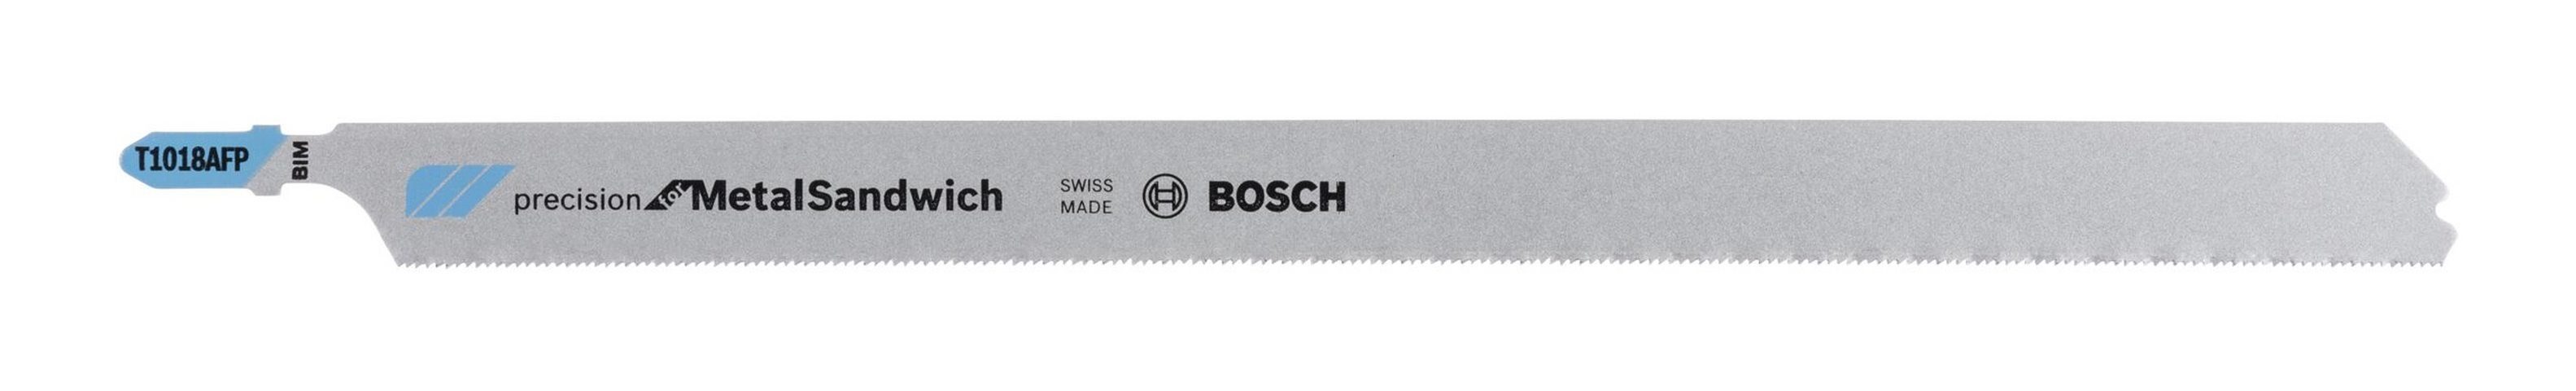 BOSCH Stück), Stichsägeblatt 1018 Precision AFP for T 3er-Pack (3 Metal-Sandwich -